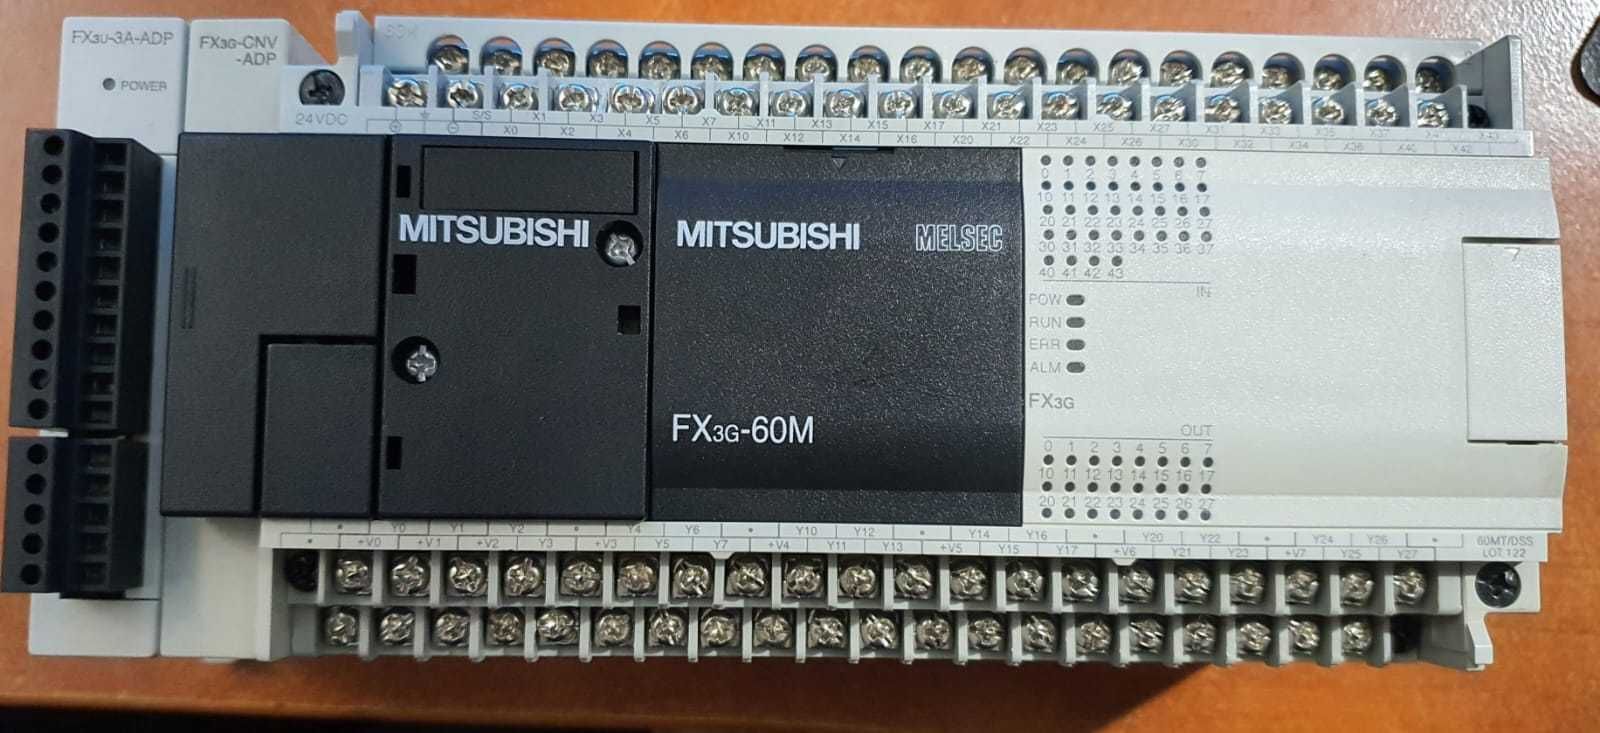 Sterownik PLC Mitsubishi FX3G-60MT/DSS + FX3U-3A-ADP + FX3G-CNV-ADP